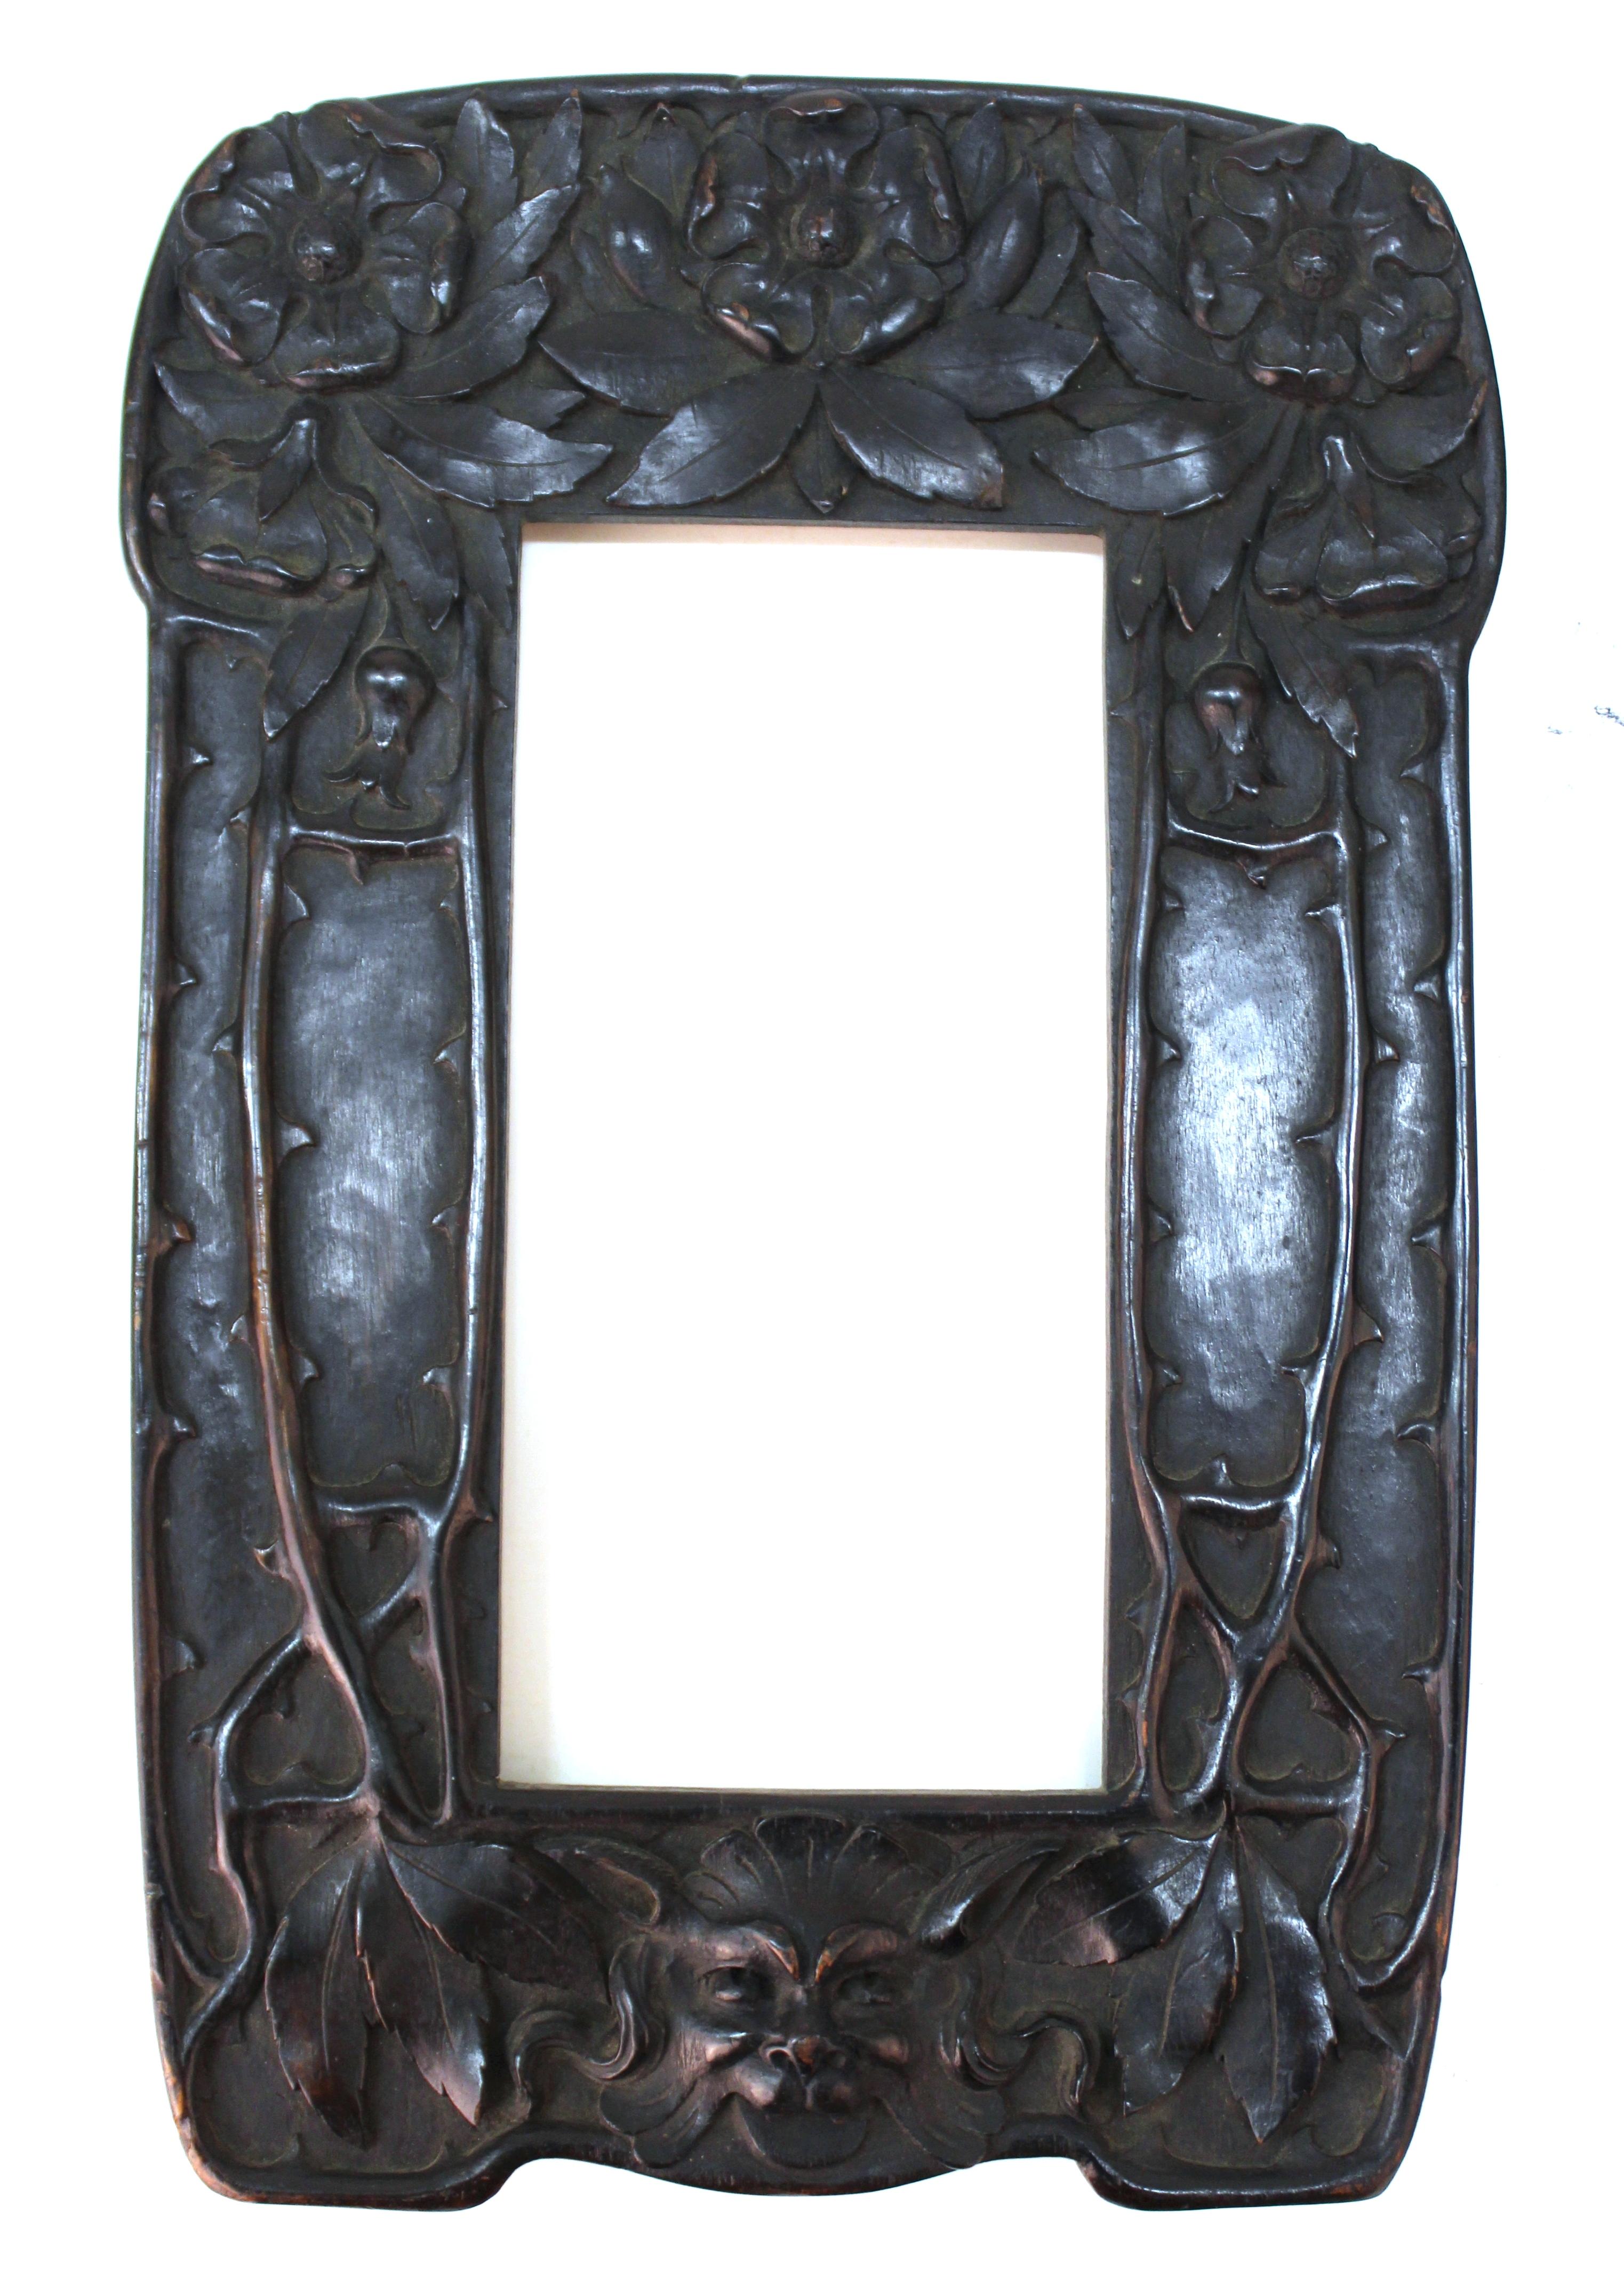 Italienischer Jugendstil-Spiegel mit einem kunstvoll geschnitzten Holzrahmen, hergestellt von Cutler & Girard in Italien. Der Rahmen hat im oberen Teil geschnitzte Rosen, an den Seiten Dornen und im unteren Teil den Kopf einer Groteske. Das Stück